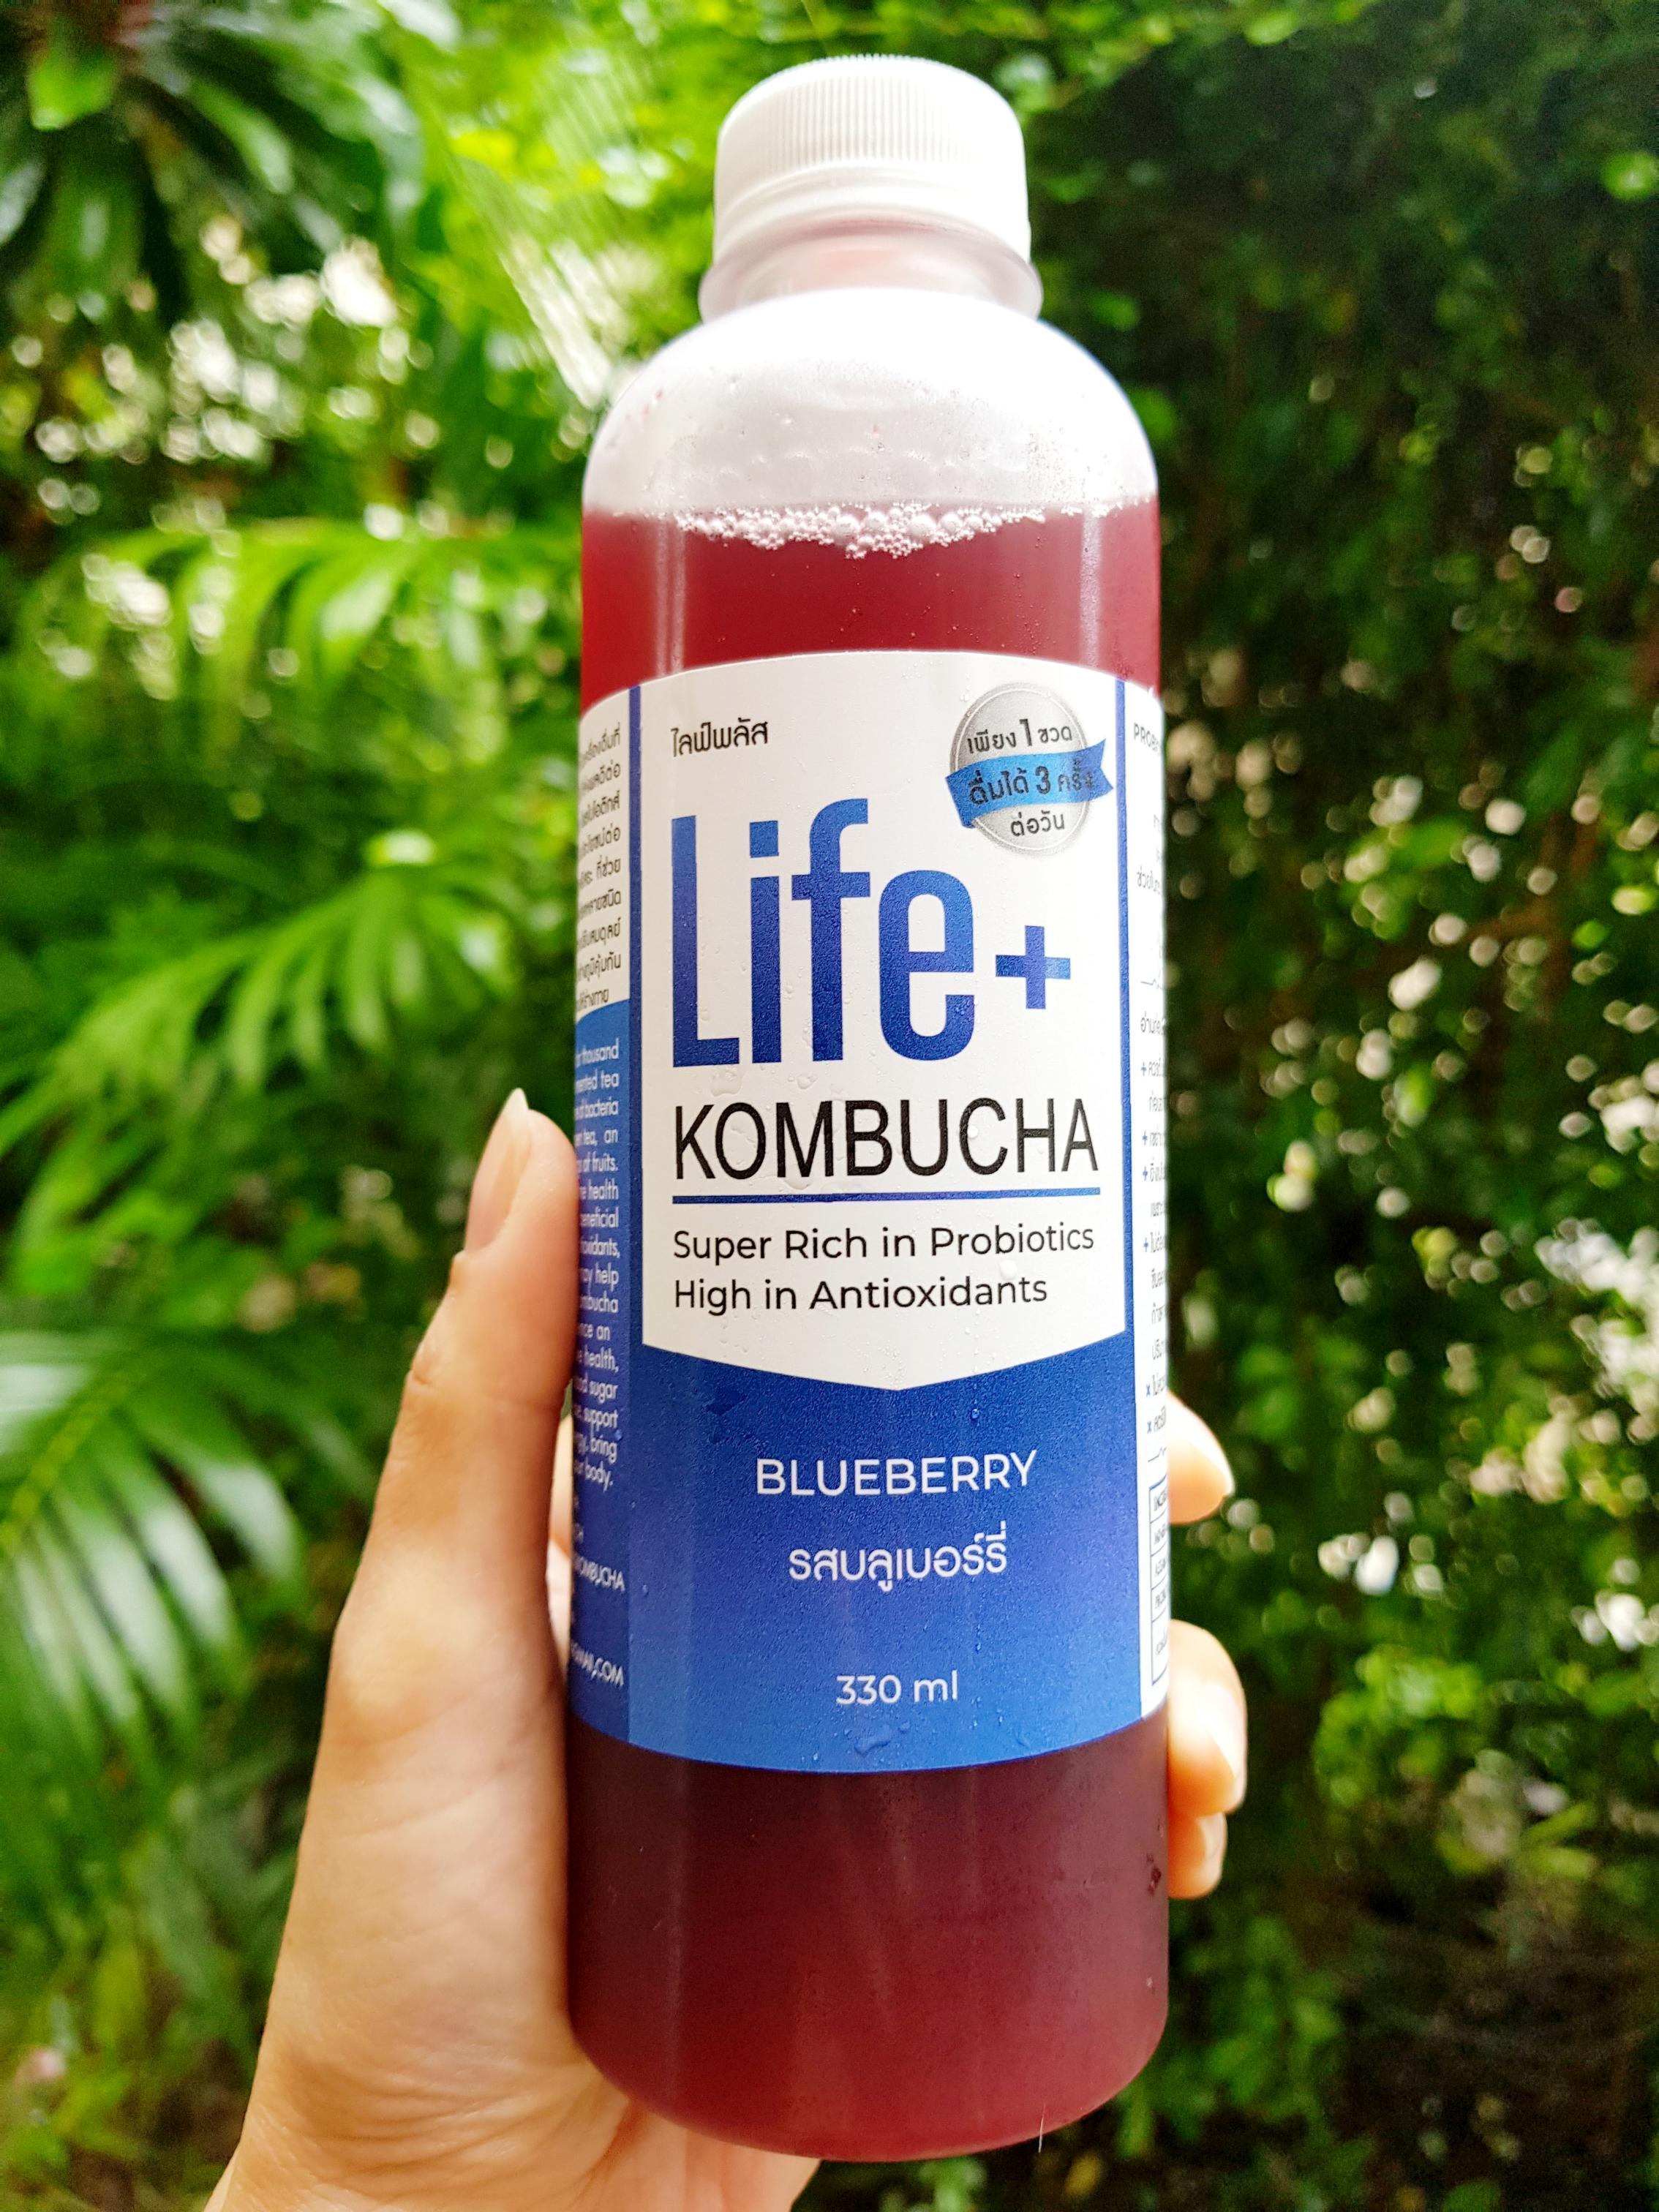 Life+ KOMBUCHA raw organic 330ml รสบลูเบอรรี่ คอมบูชา คอมบูชะ ชาหมัก ดีท็อกซ์ ท้องผูก โพรไบโอติก สารต้านอนุมูลอิสระ คอมบูฉะ detox probiotic antioxidant สุขภาพ